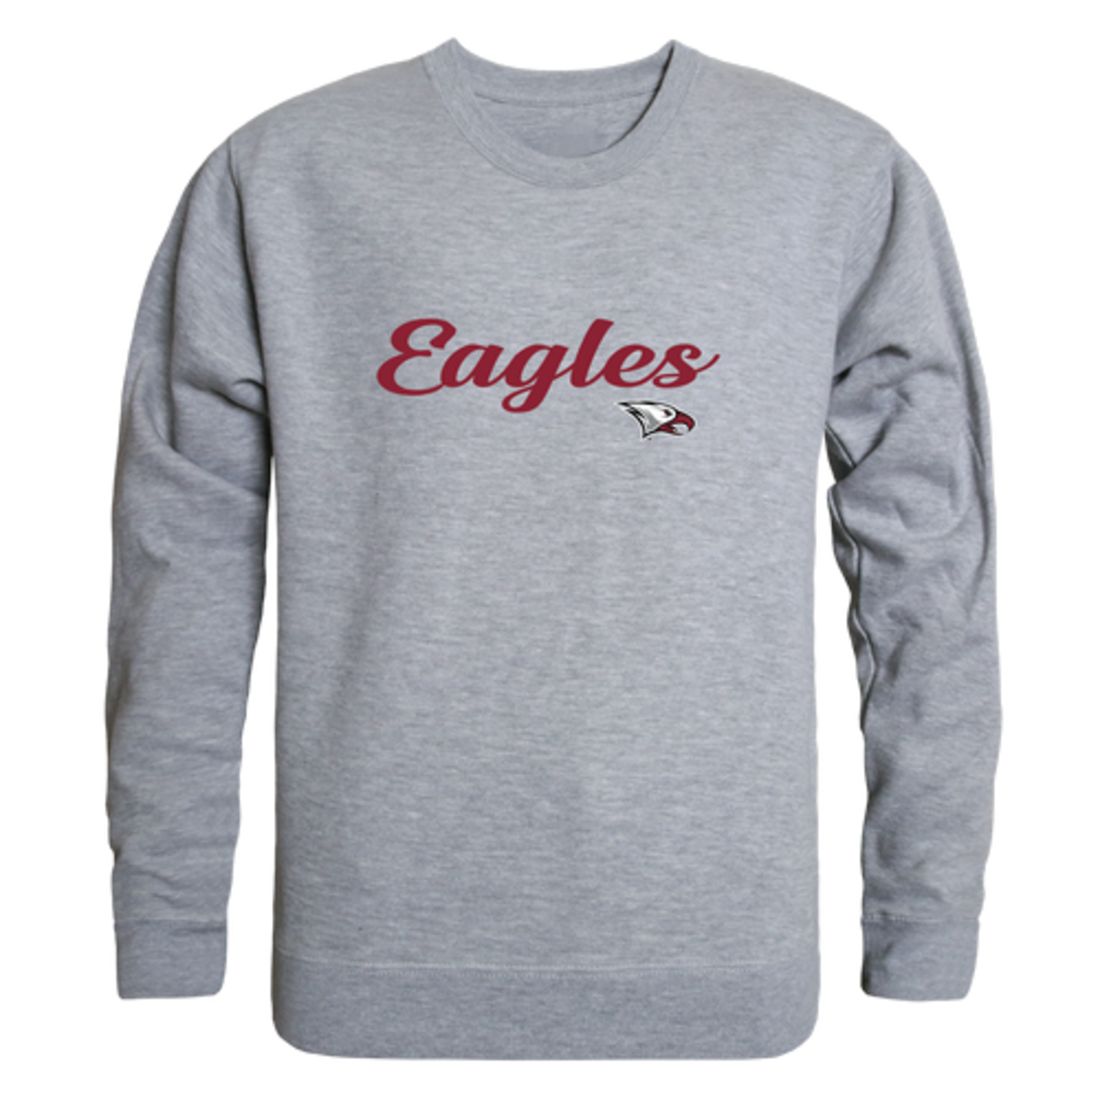 NCCU North Carolina Central University Eagles Script Crewneck Pullover Sweatshirt Sweater Black-Campus-Wardrobe